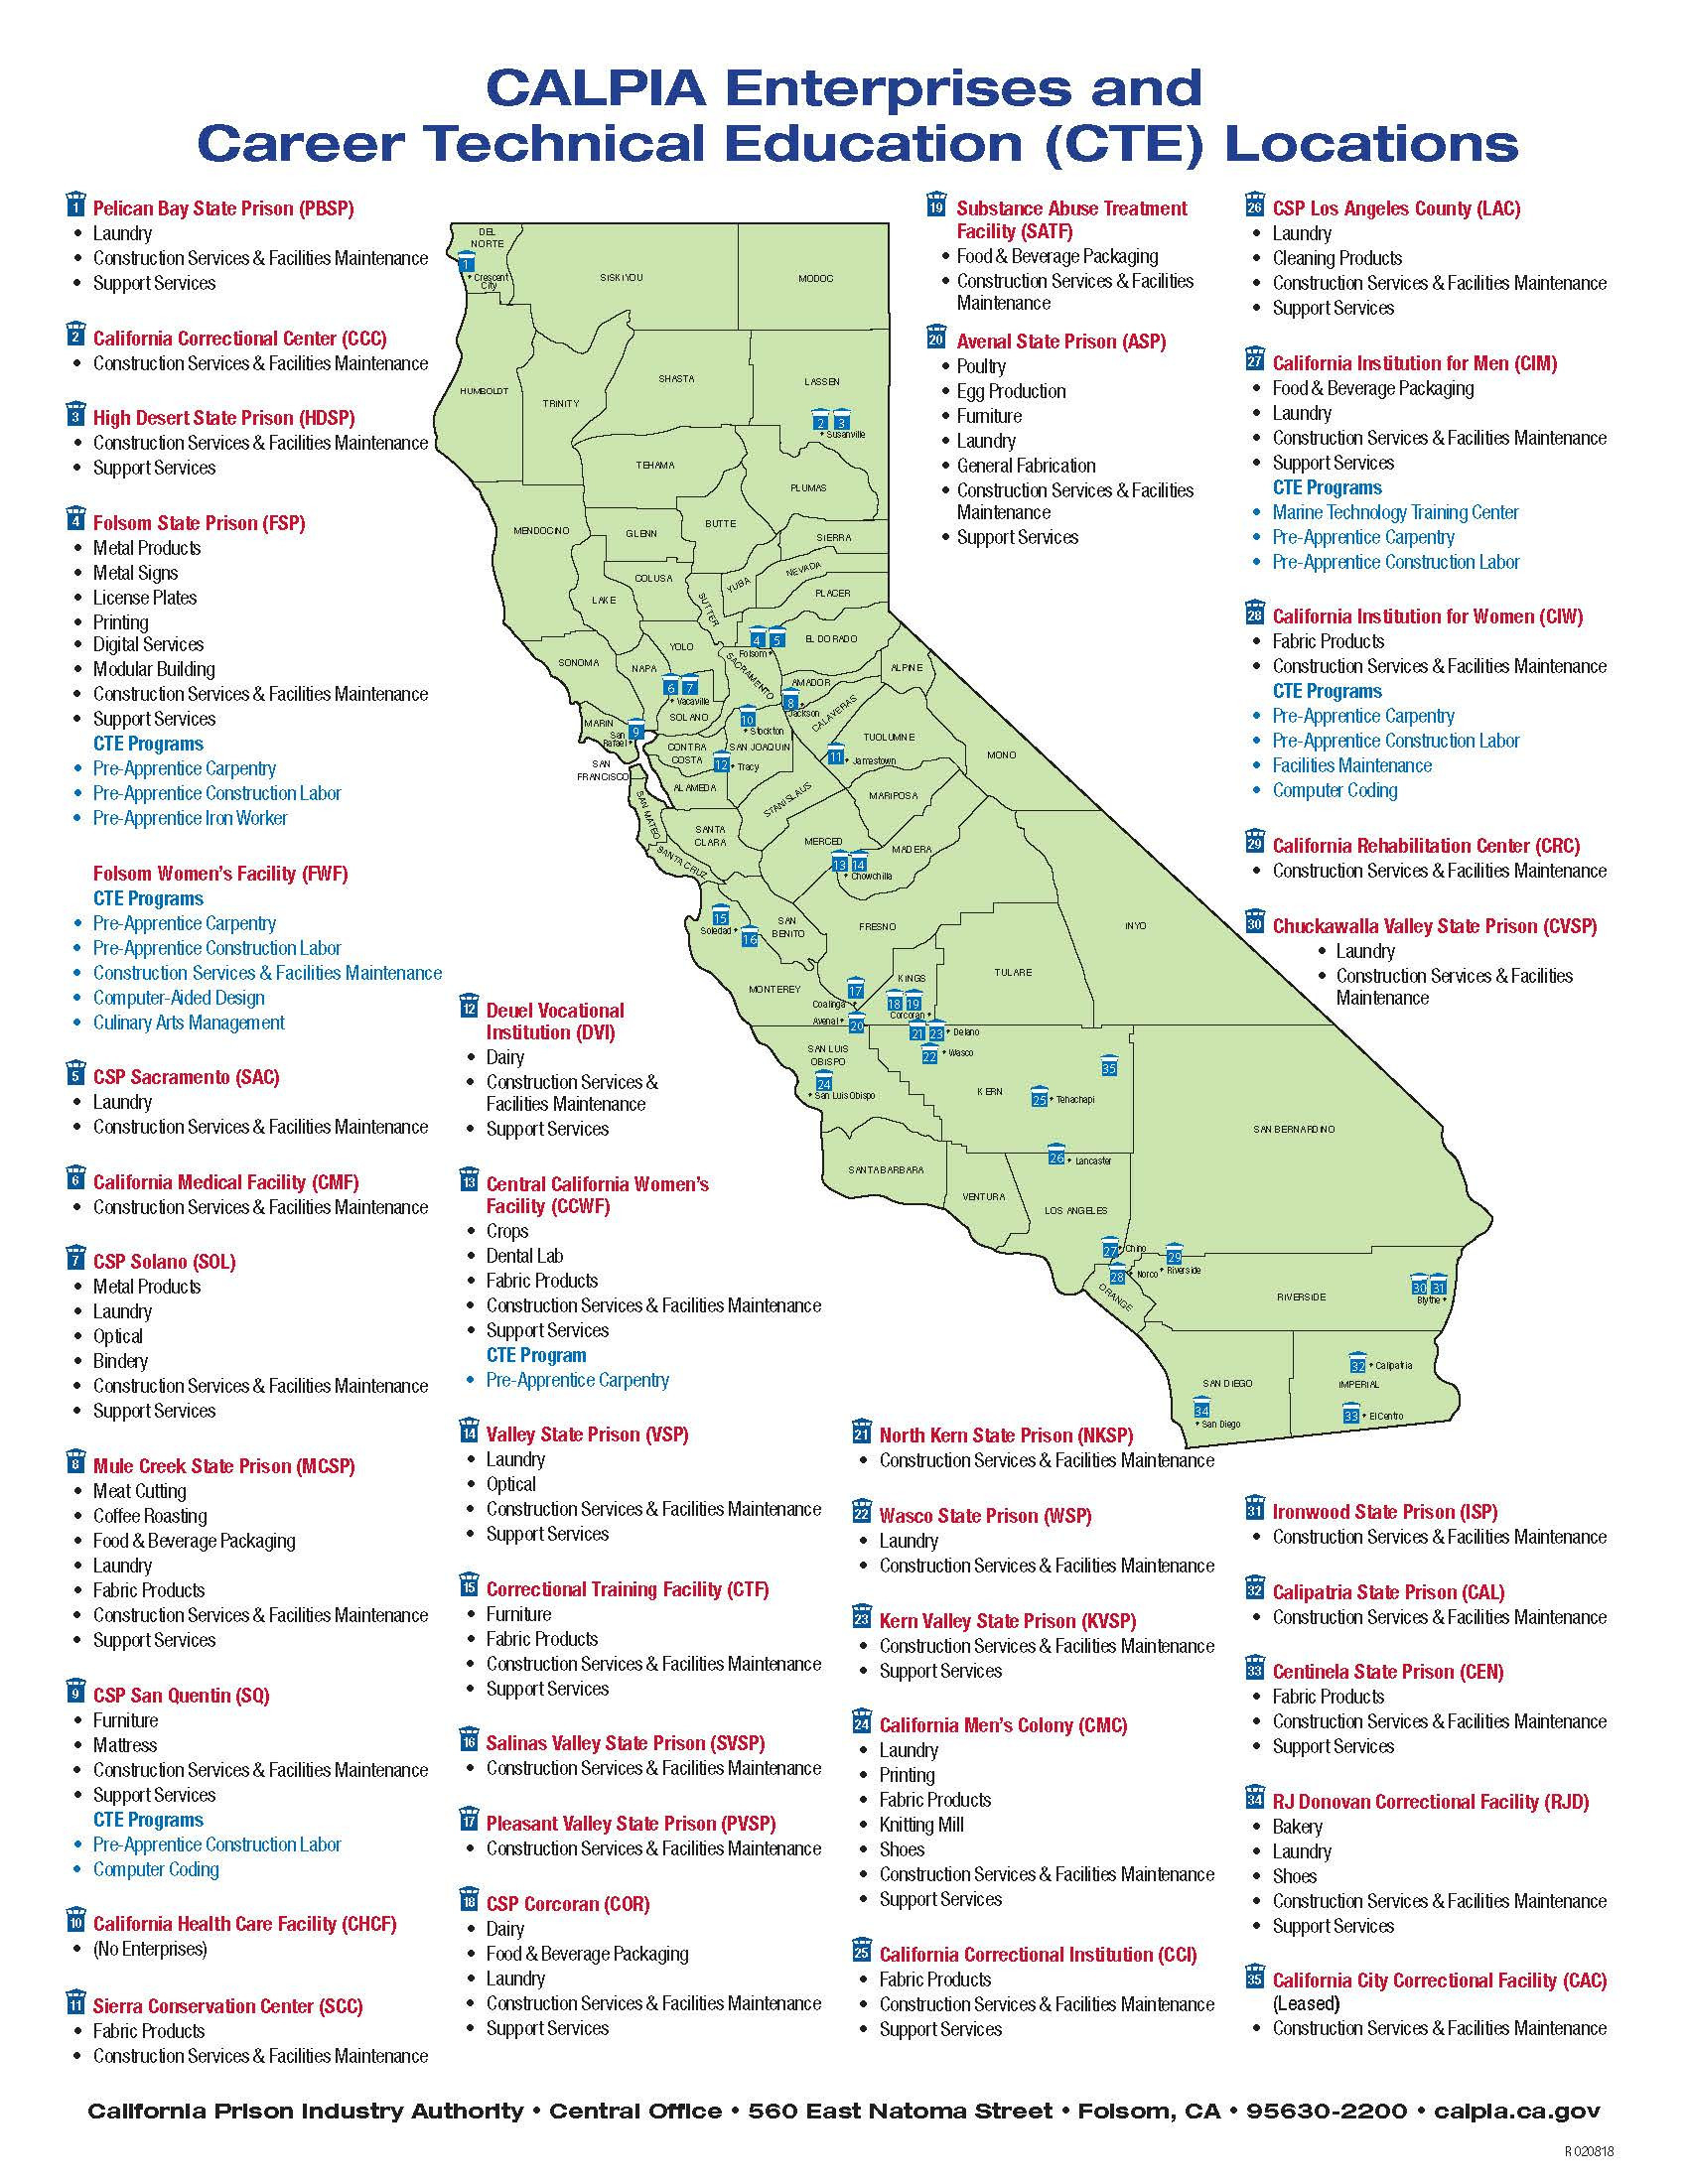 Cdcr Prison Map Fresh California State Prison Locations Map Simple - California Prison Locations Map